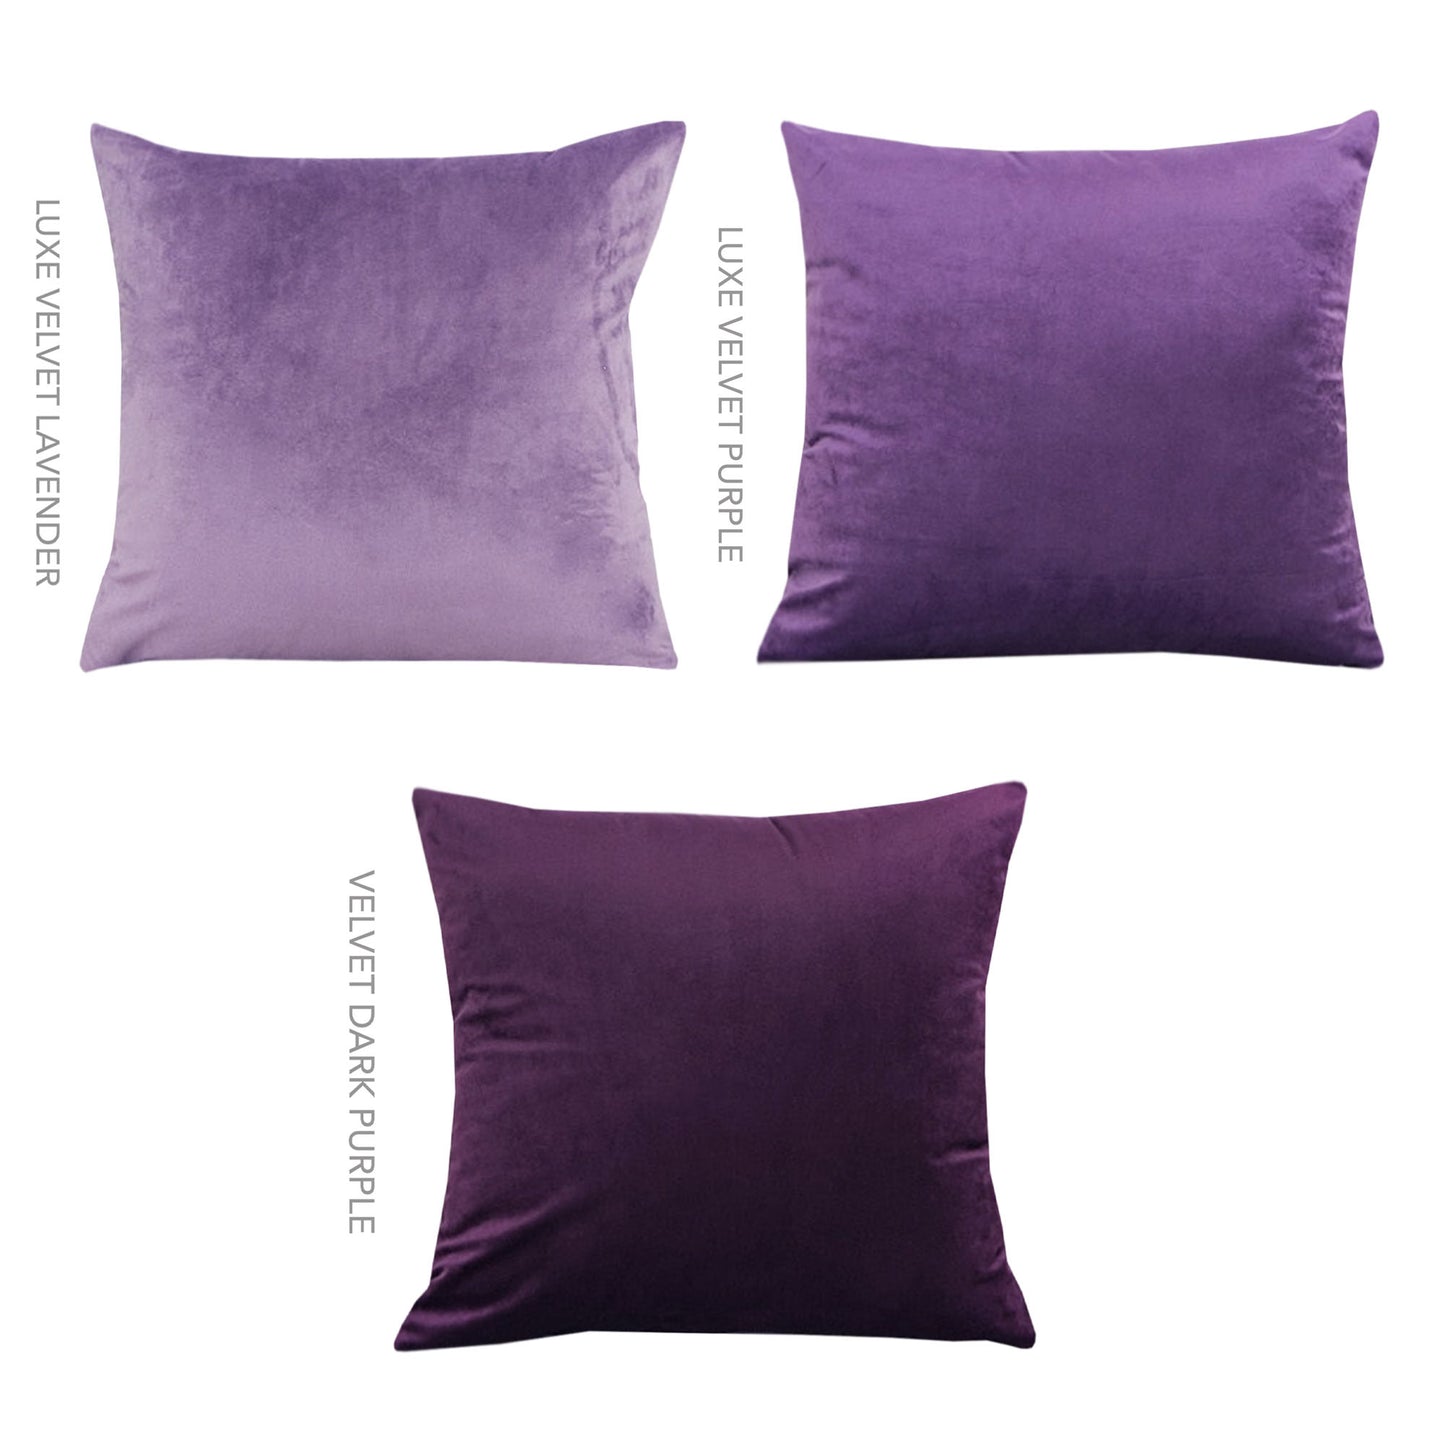 Luxe Velvet Cushions  - Light Beige - 18 Colours